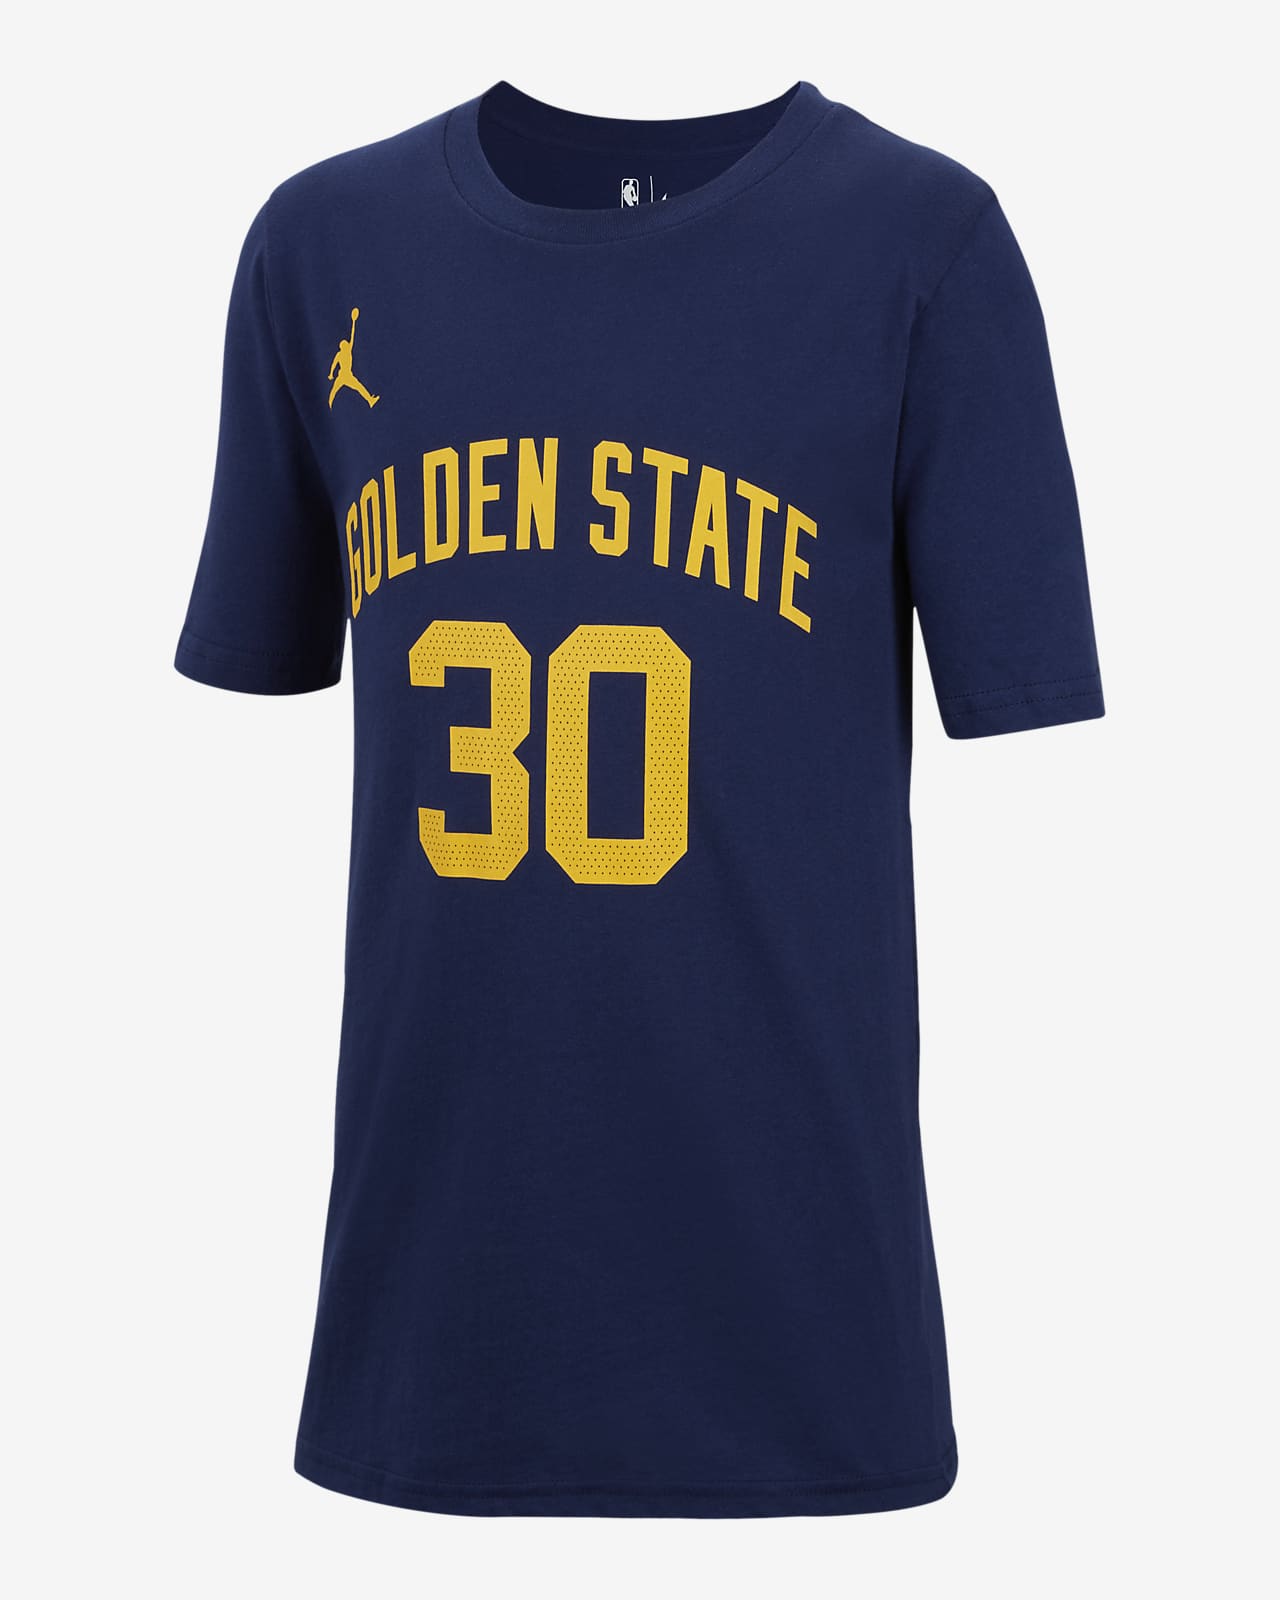 Golden State Warriors Official Online Shop